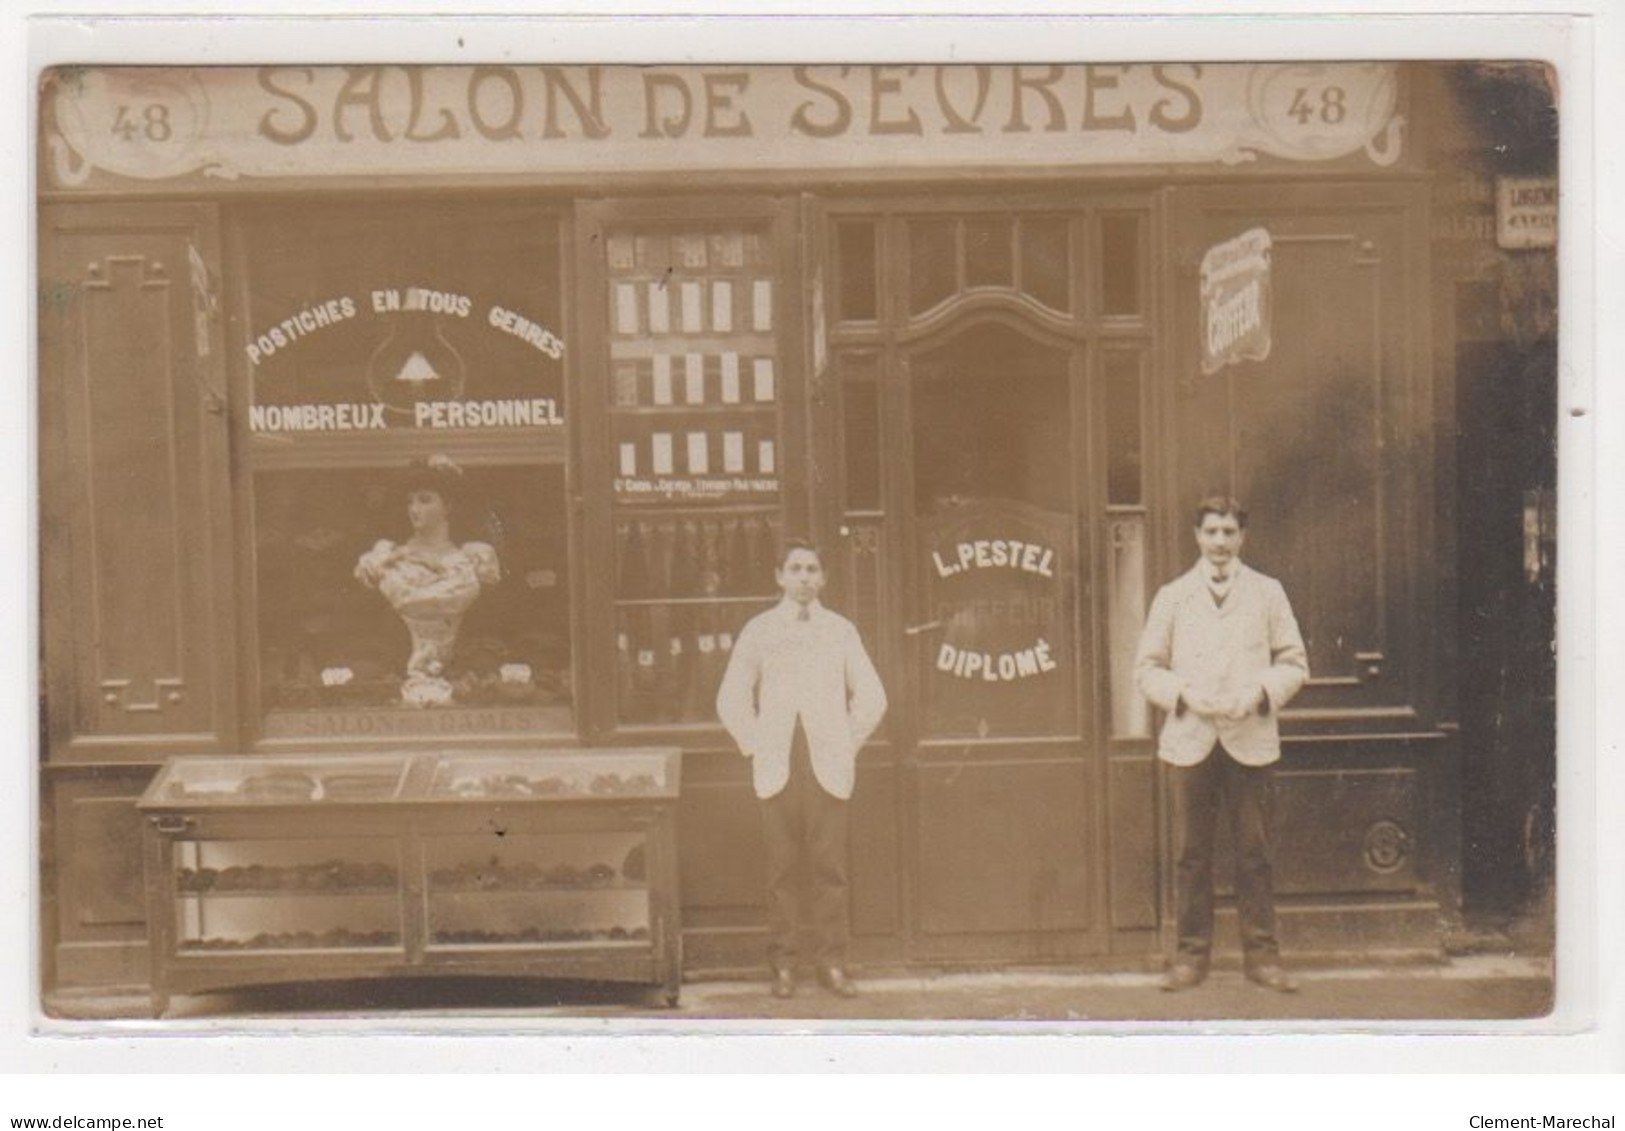 PARIS : Carte Photo Du Salon De Coiffure De Sevres (PESTEL - Coiffeur) Au 48 Rue De Sevres - Bon état - Paris (07)